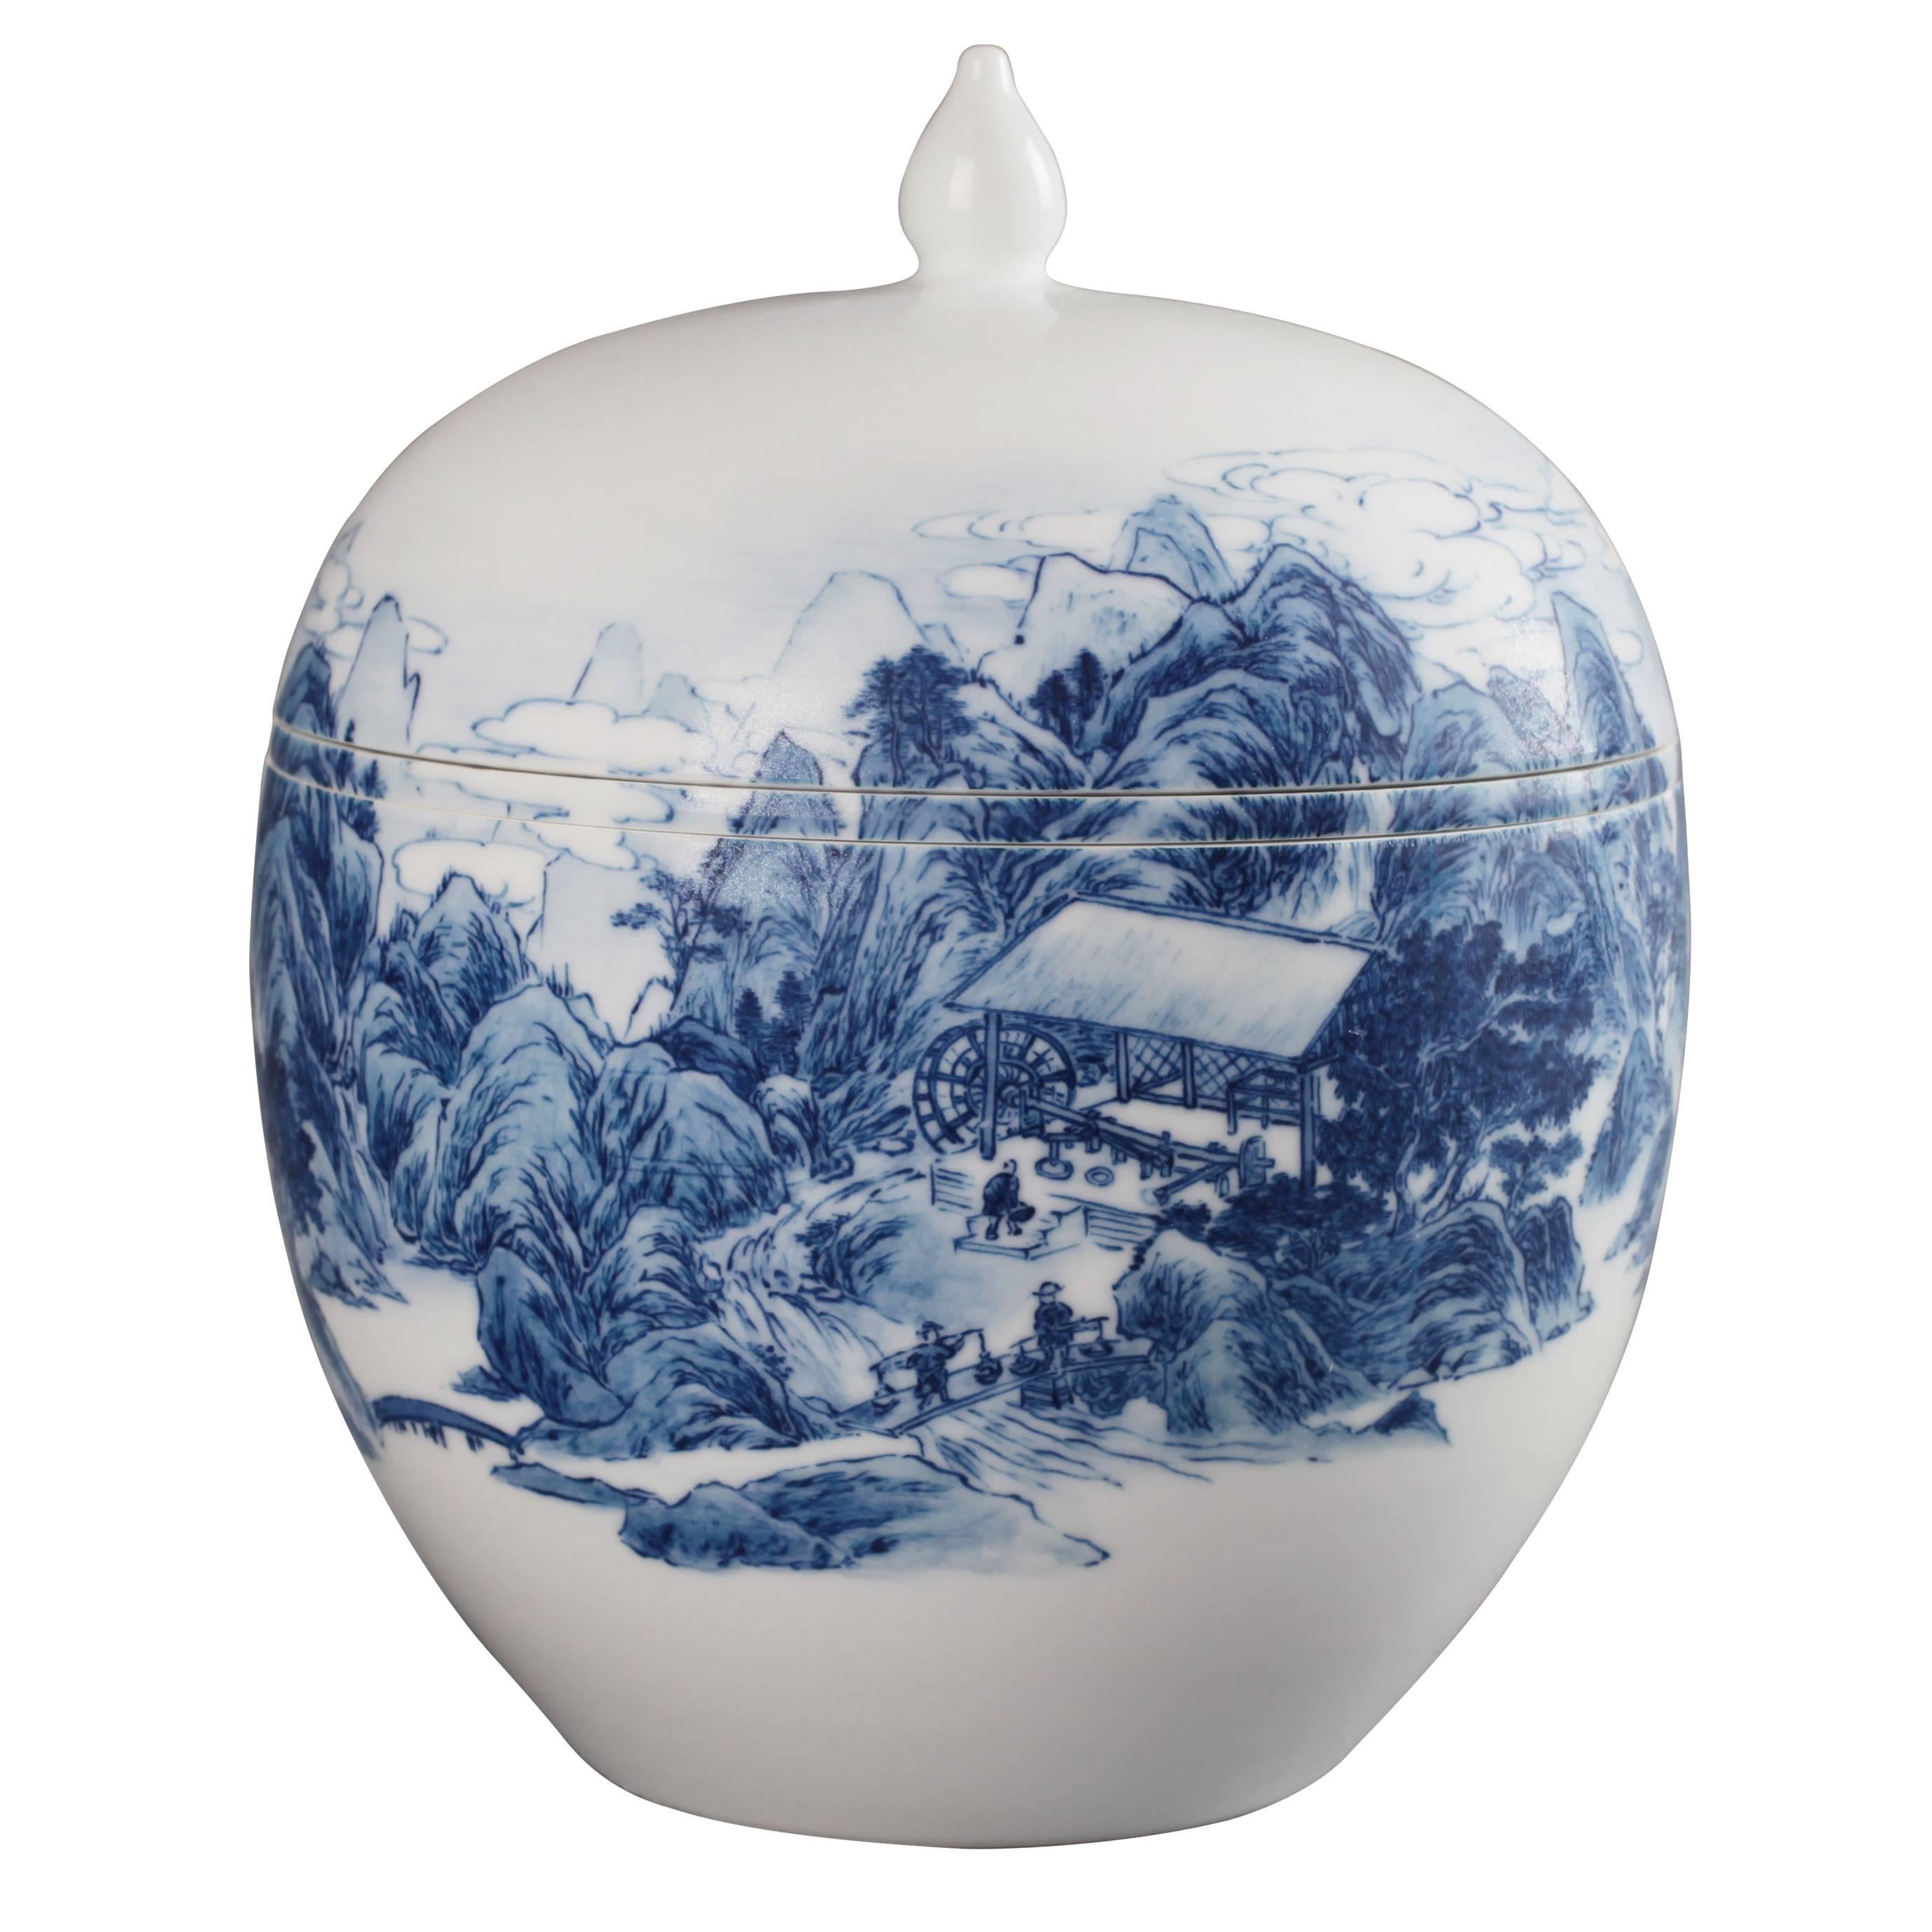 The Kaolin Mines #1 Porcelain Bowl by Zhenhan Hao